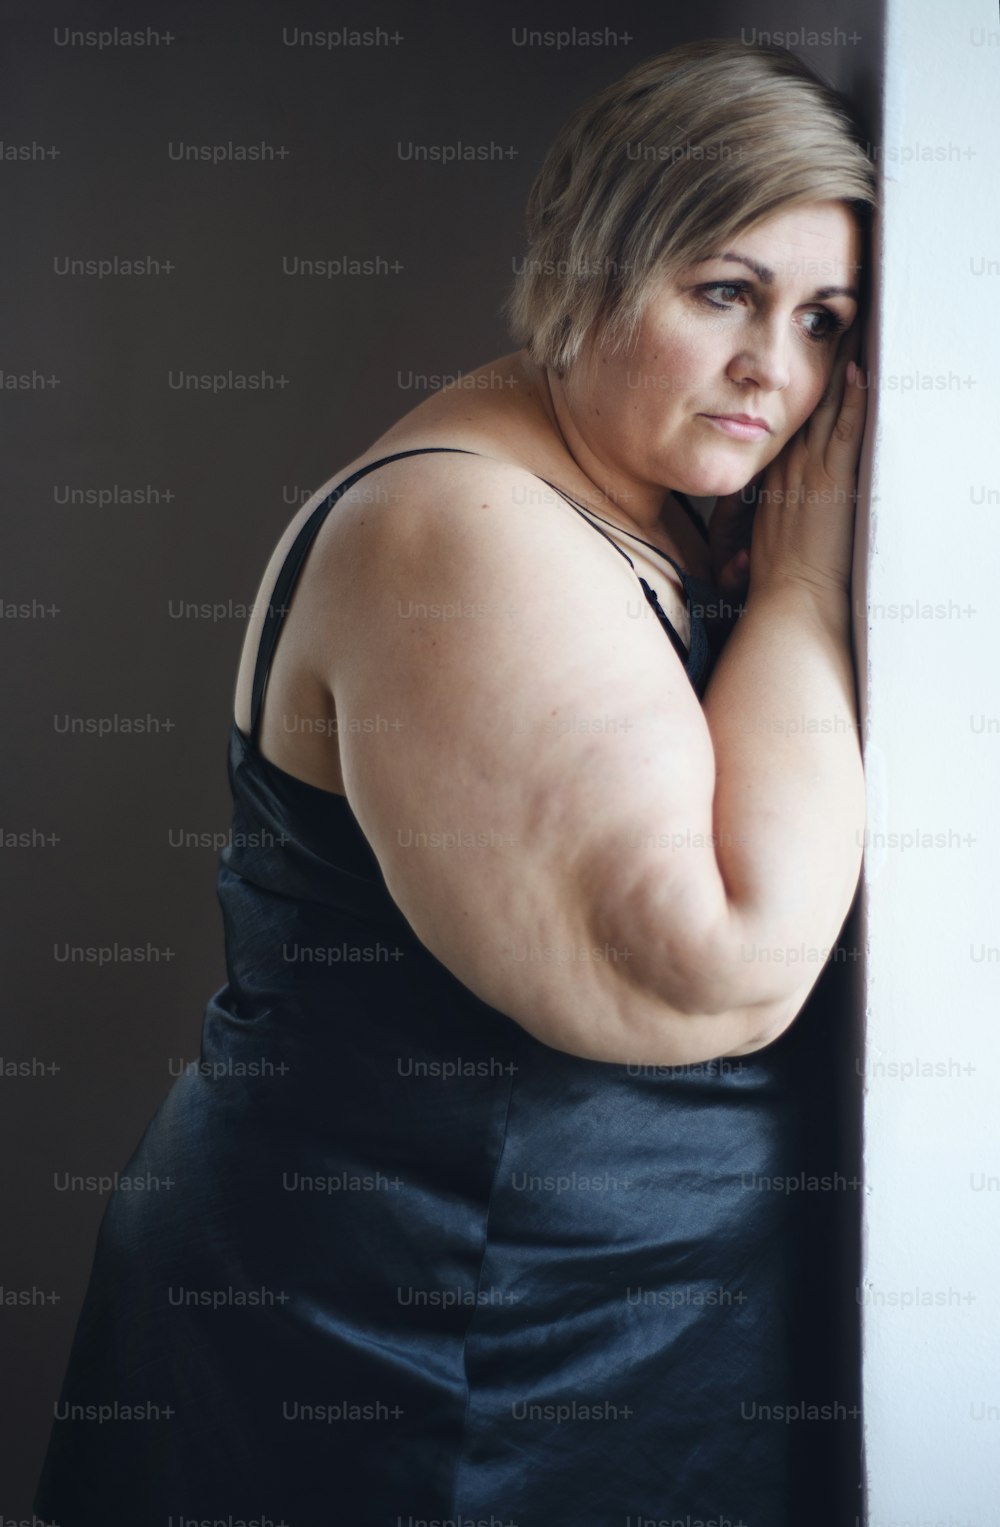 憂鬱で孤独な太った女性が立って、家の窓から眺めている。